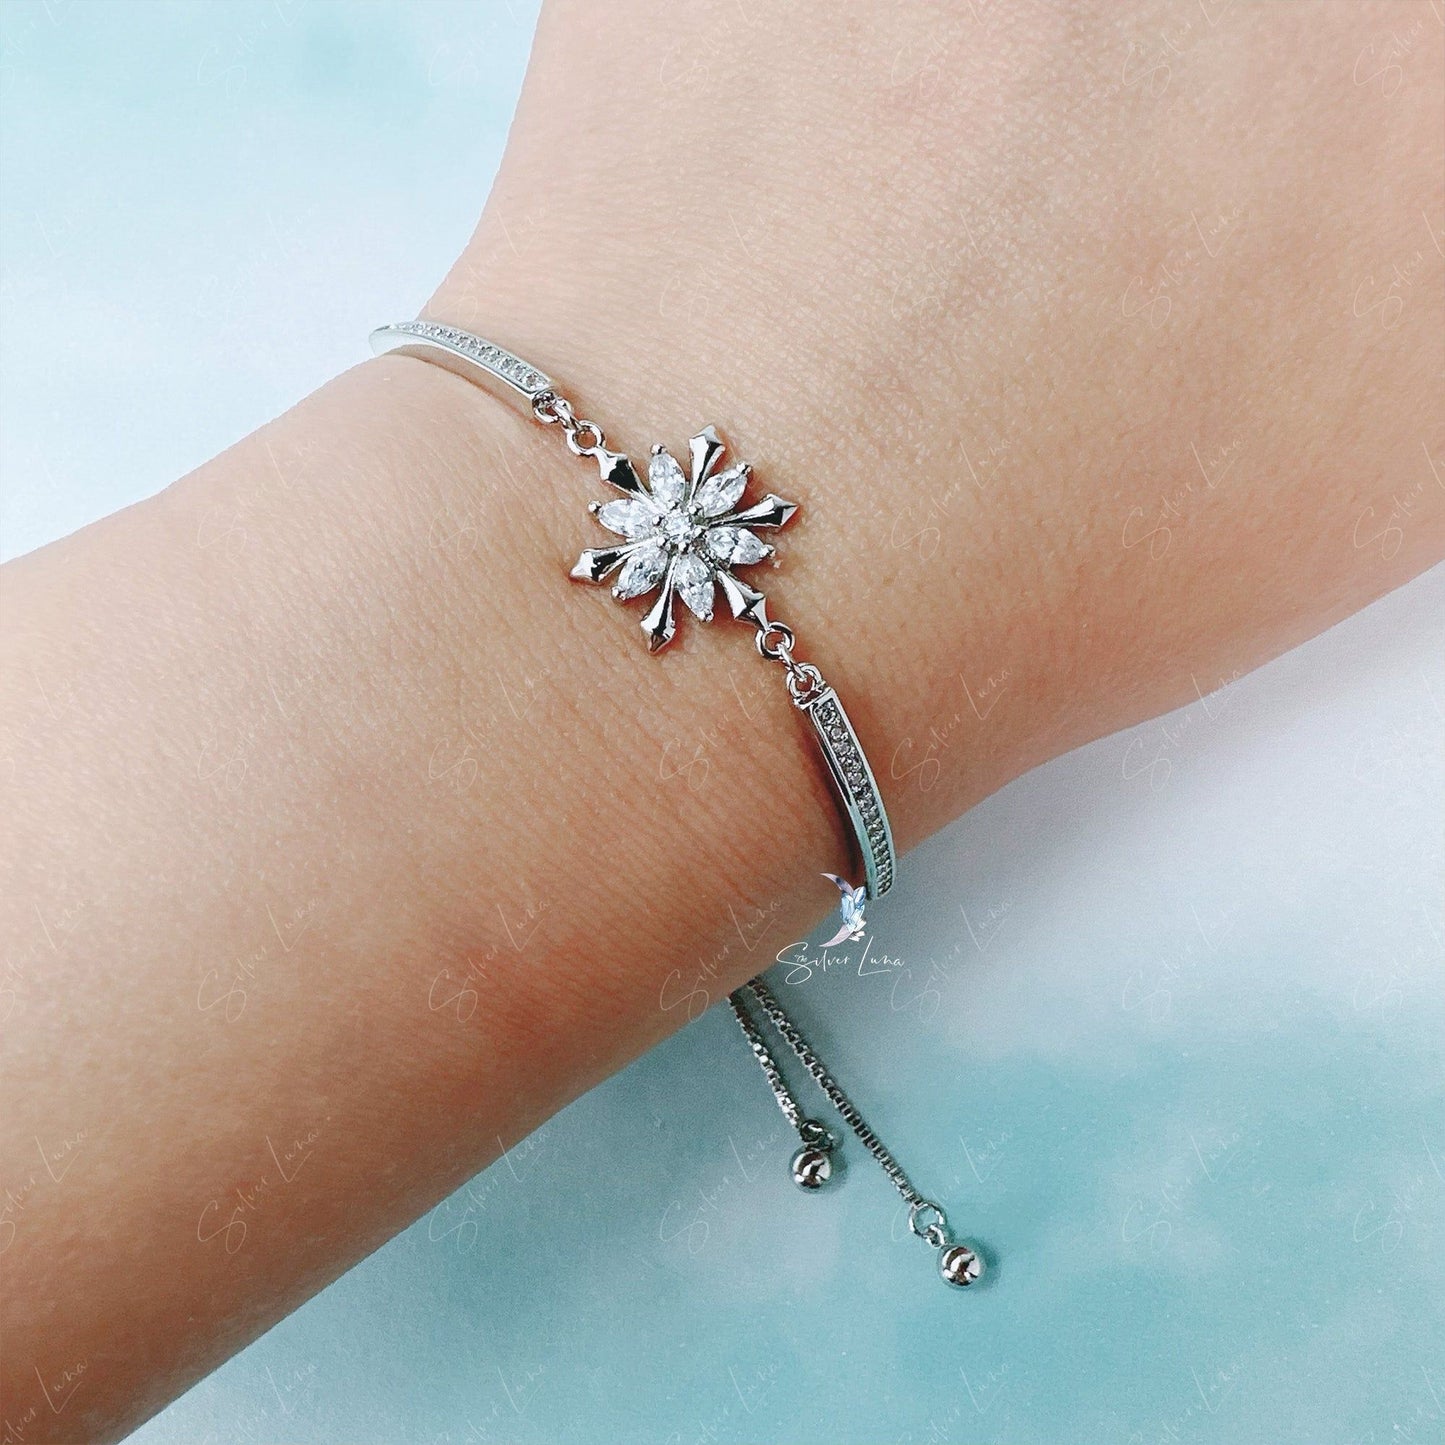 Snowflake adjustable bracelet